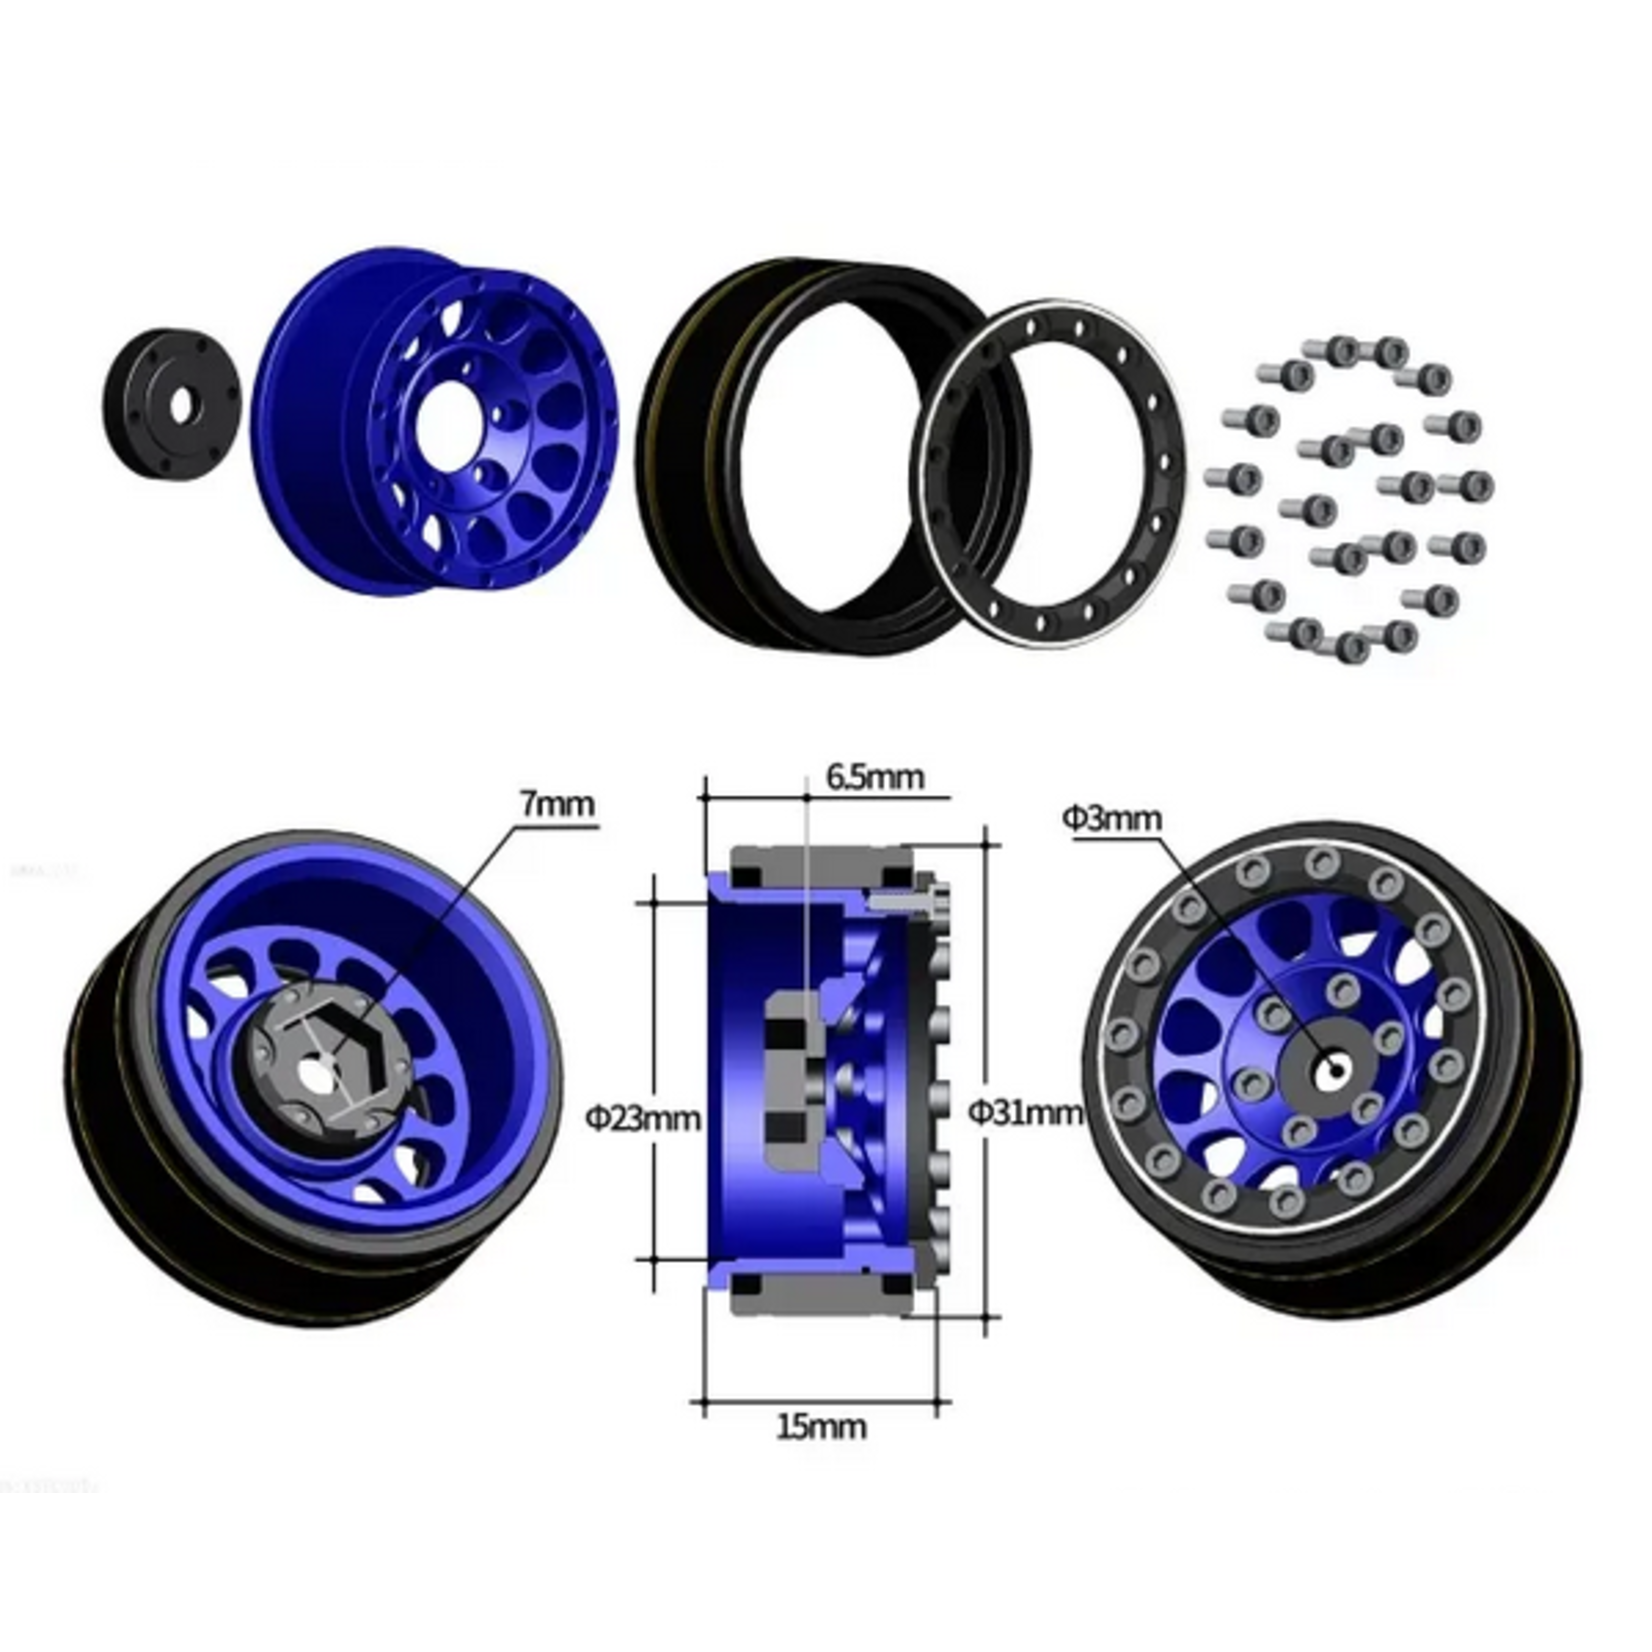 Treal Treal Hobby Type I 1.0" Classic 12-Spoke Beadlock Wheels (Blue) (4) (27.2g) #X003Z3T3WV